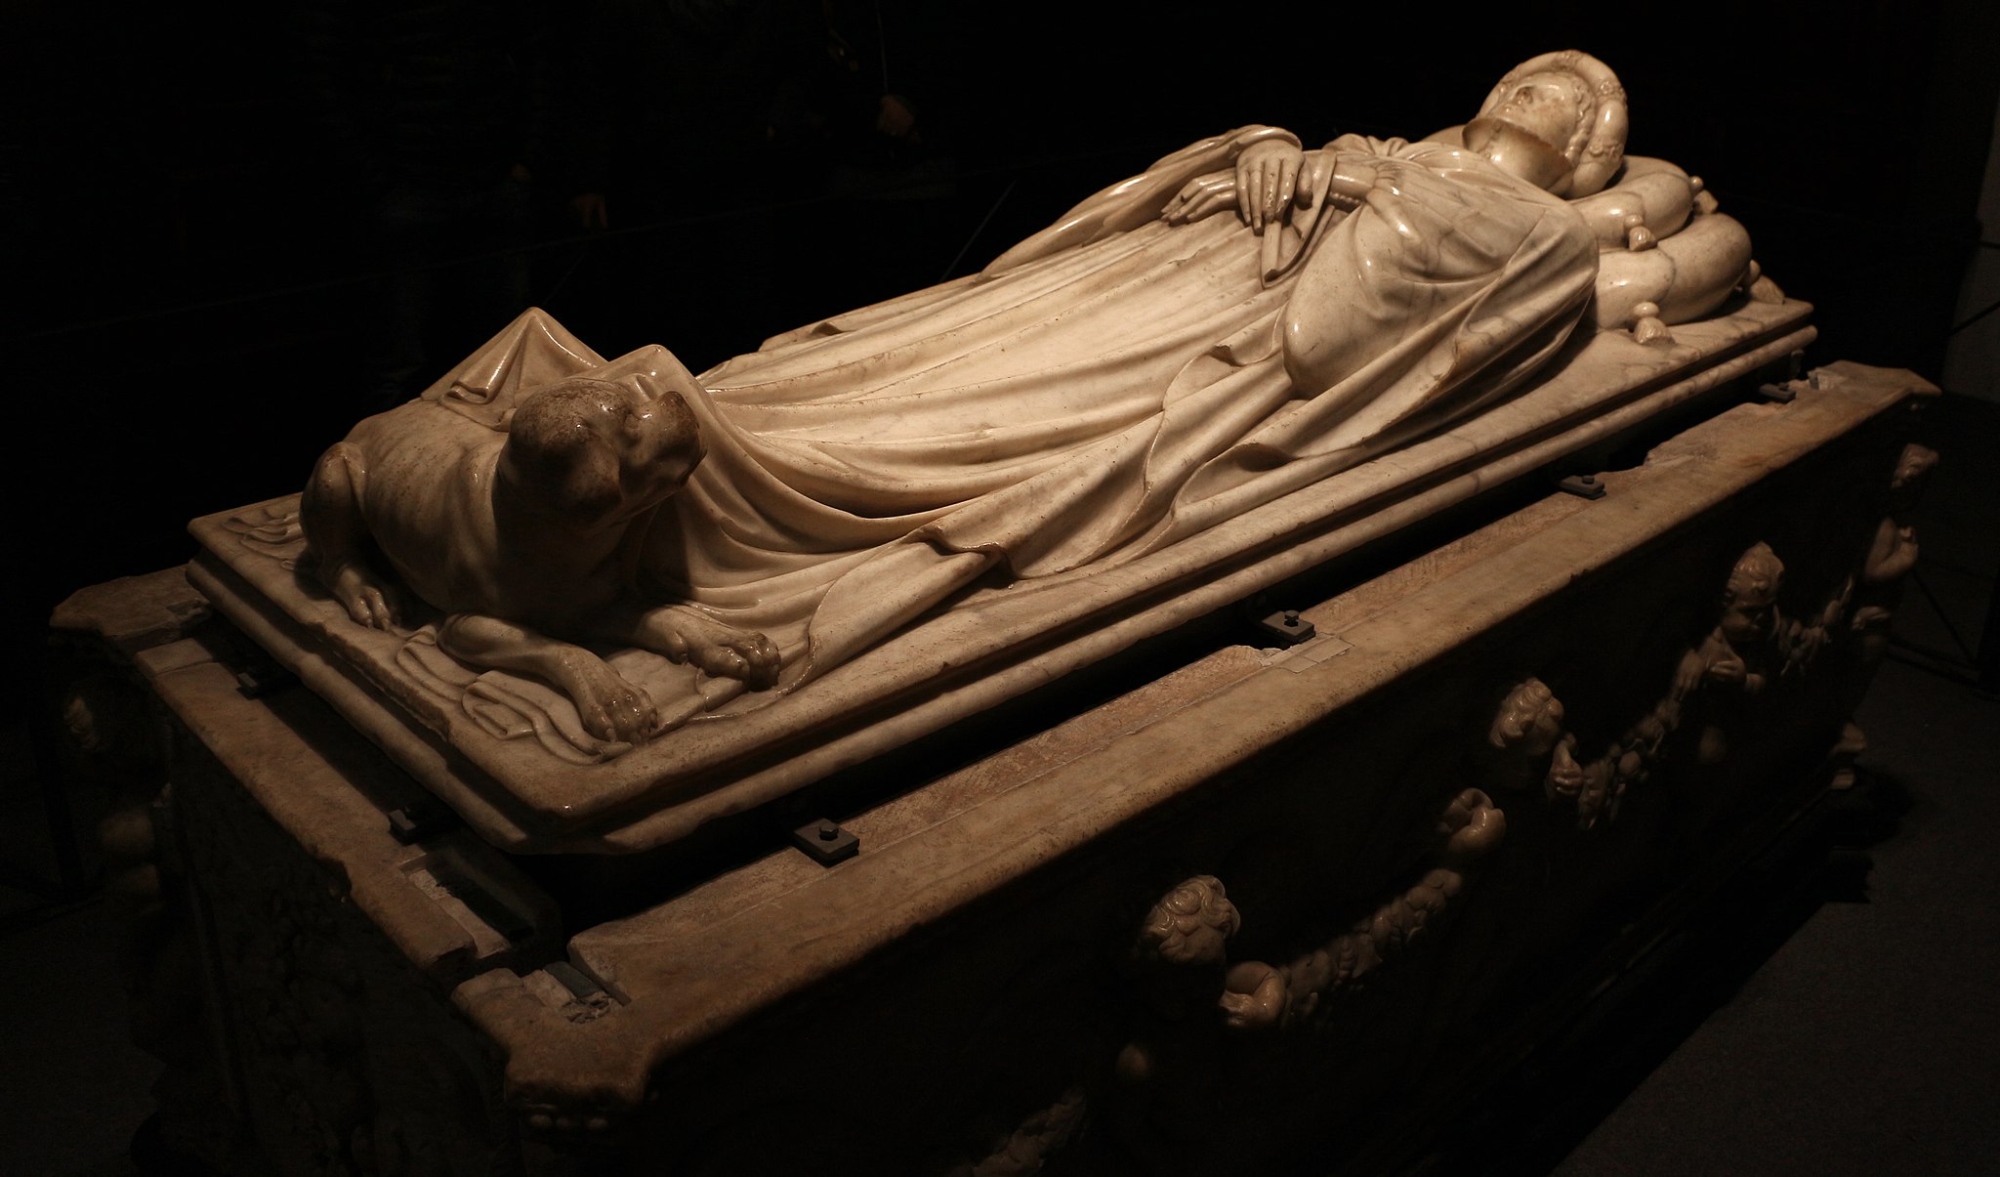 Marble sarcophagus of Ilaria del Carretto, by Jacopo della Quercia